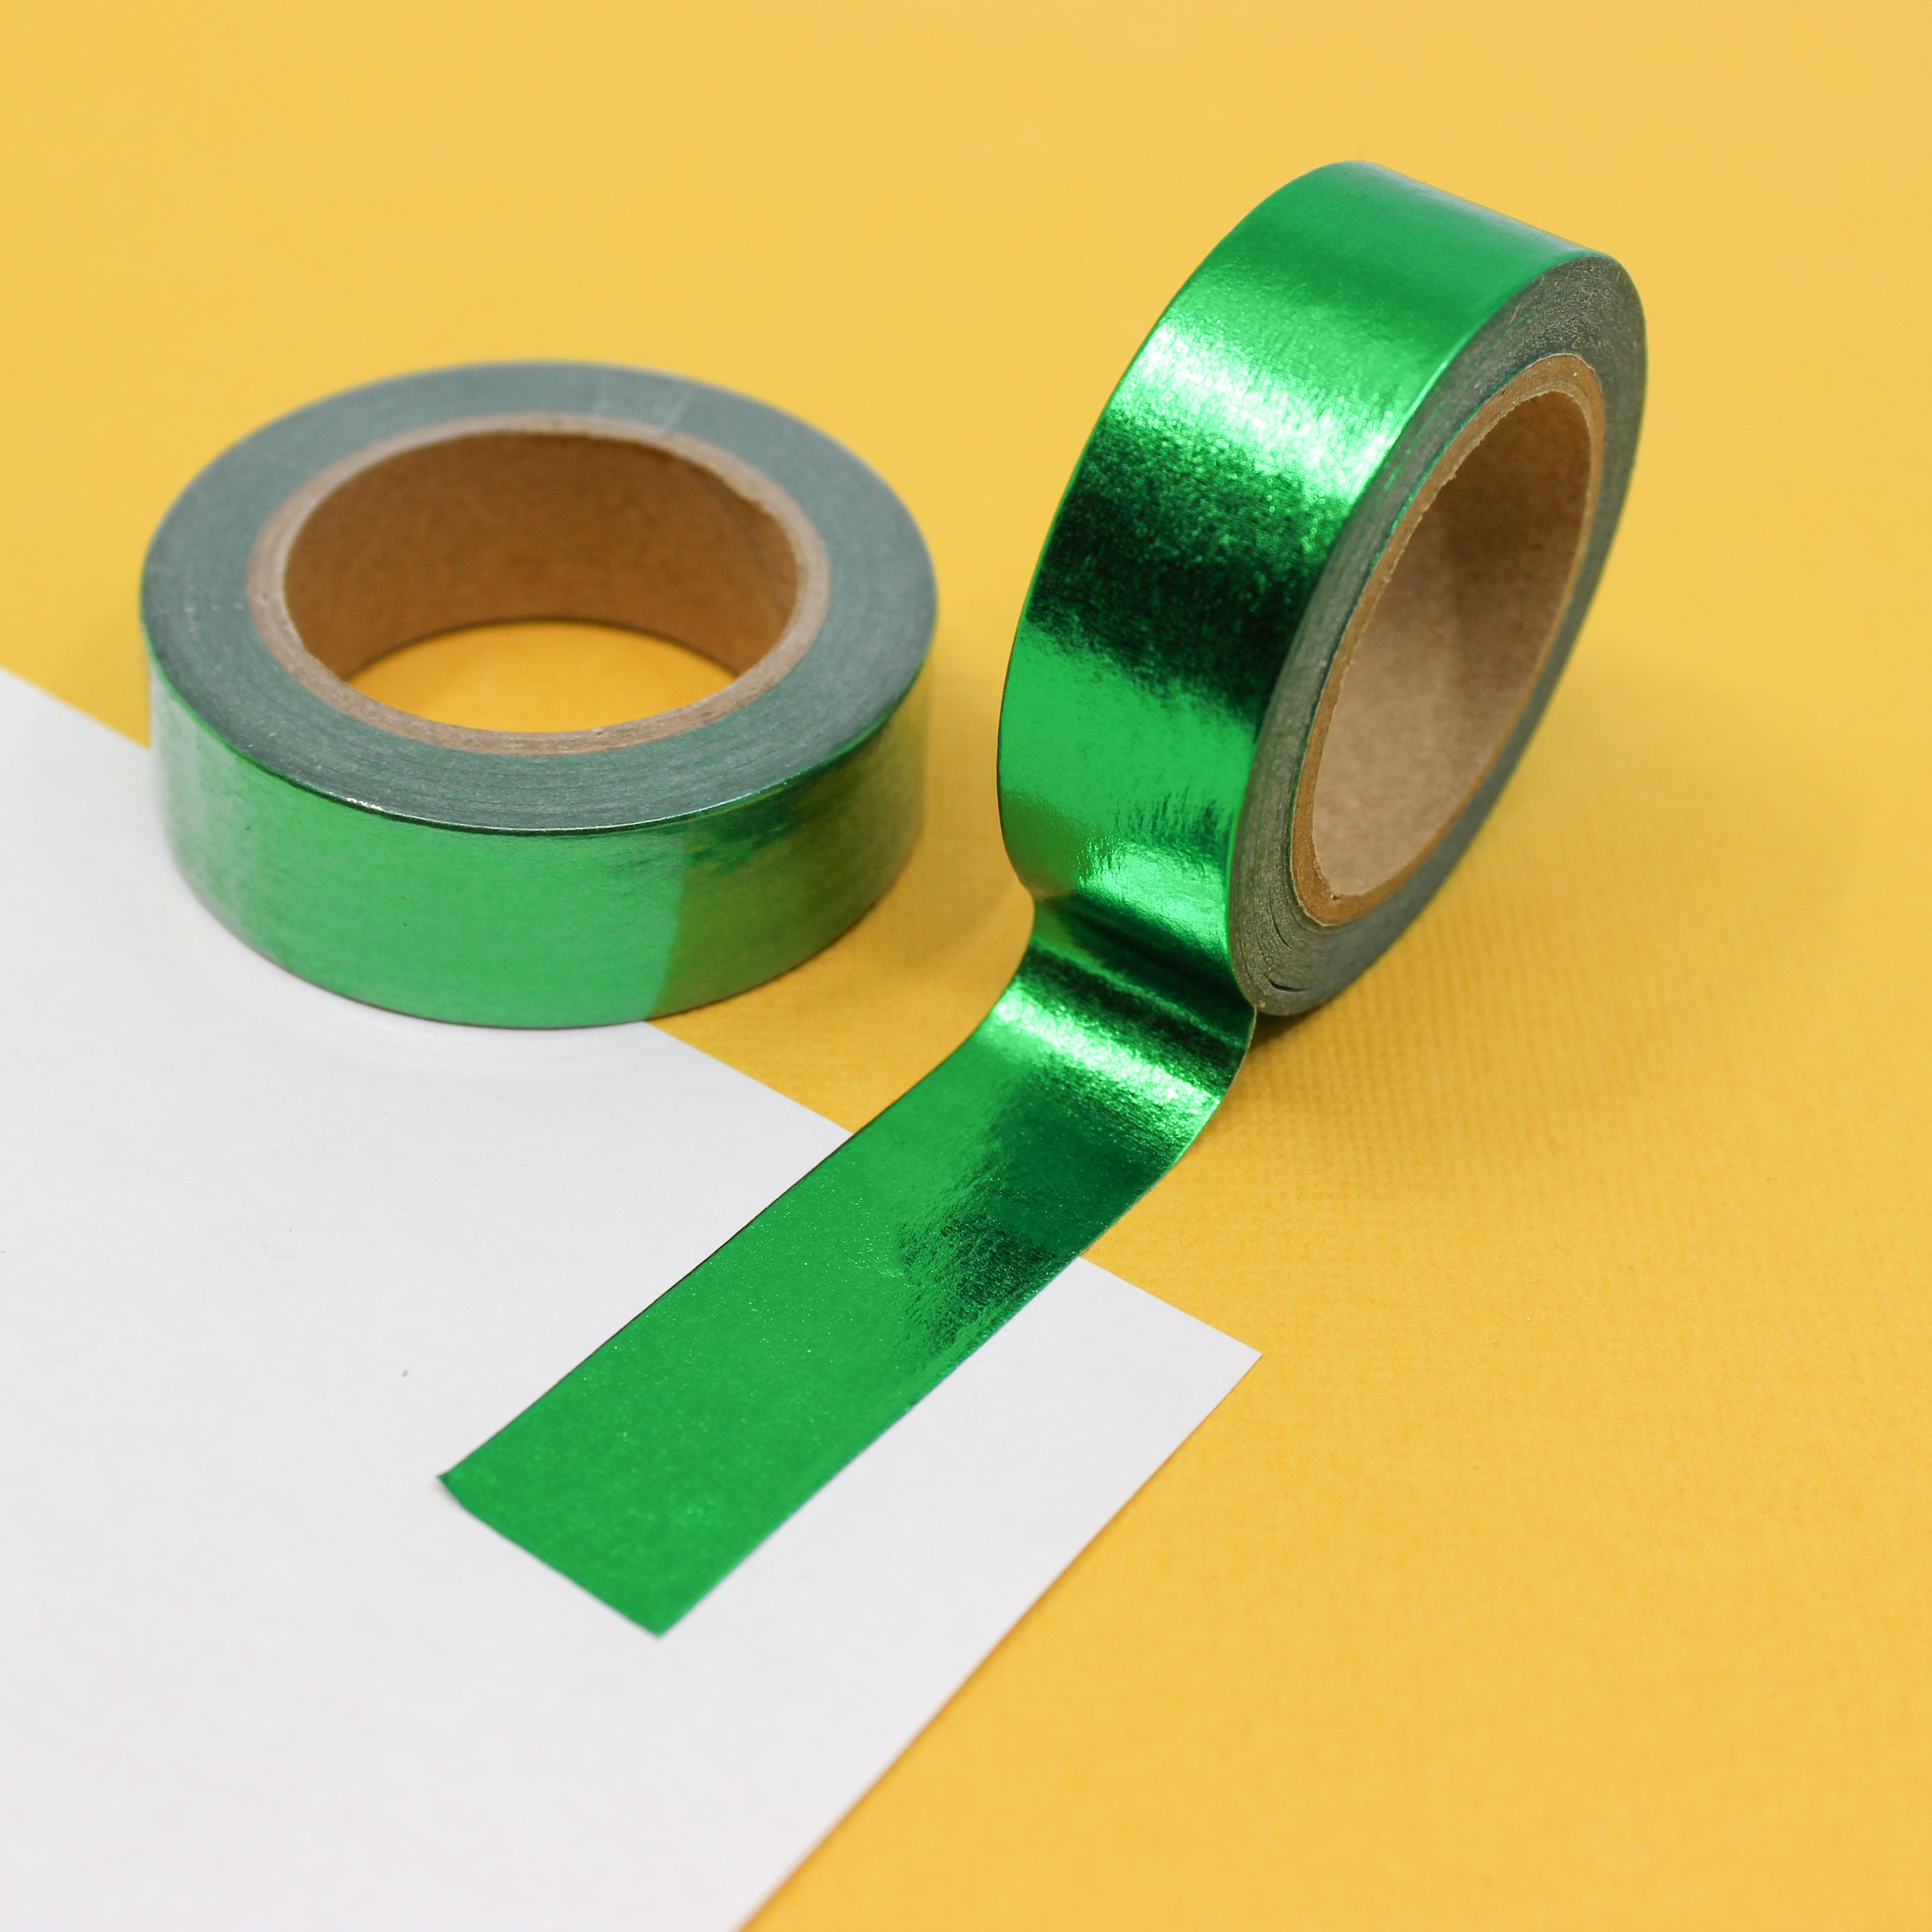 3M Scotch Washi Tape Shapes Green Crafting Tape Paper Sticker Scrapbook  Design